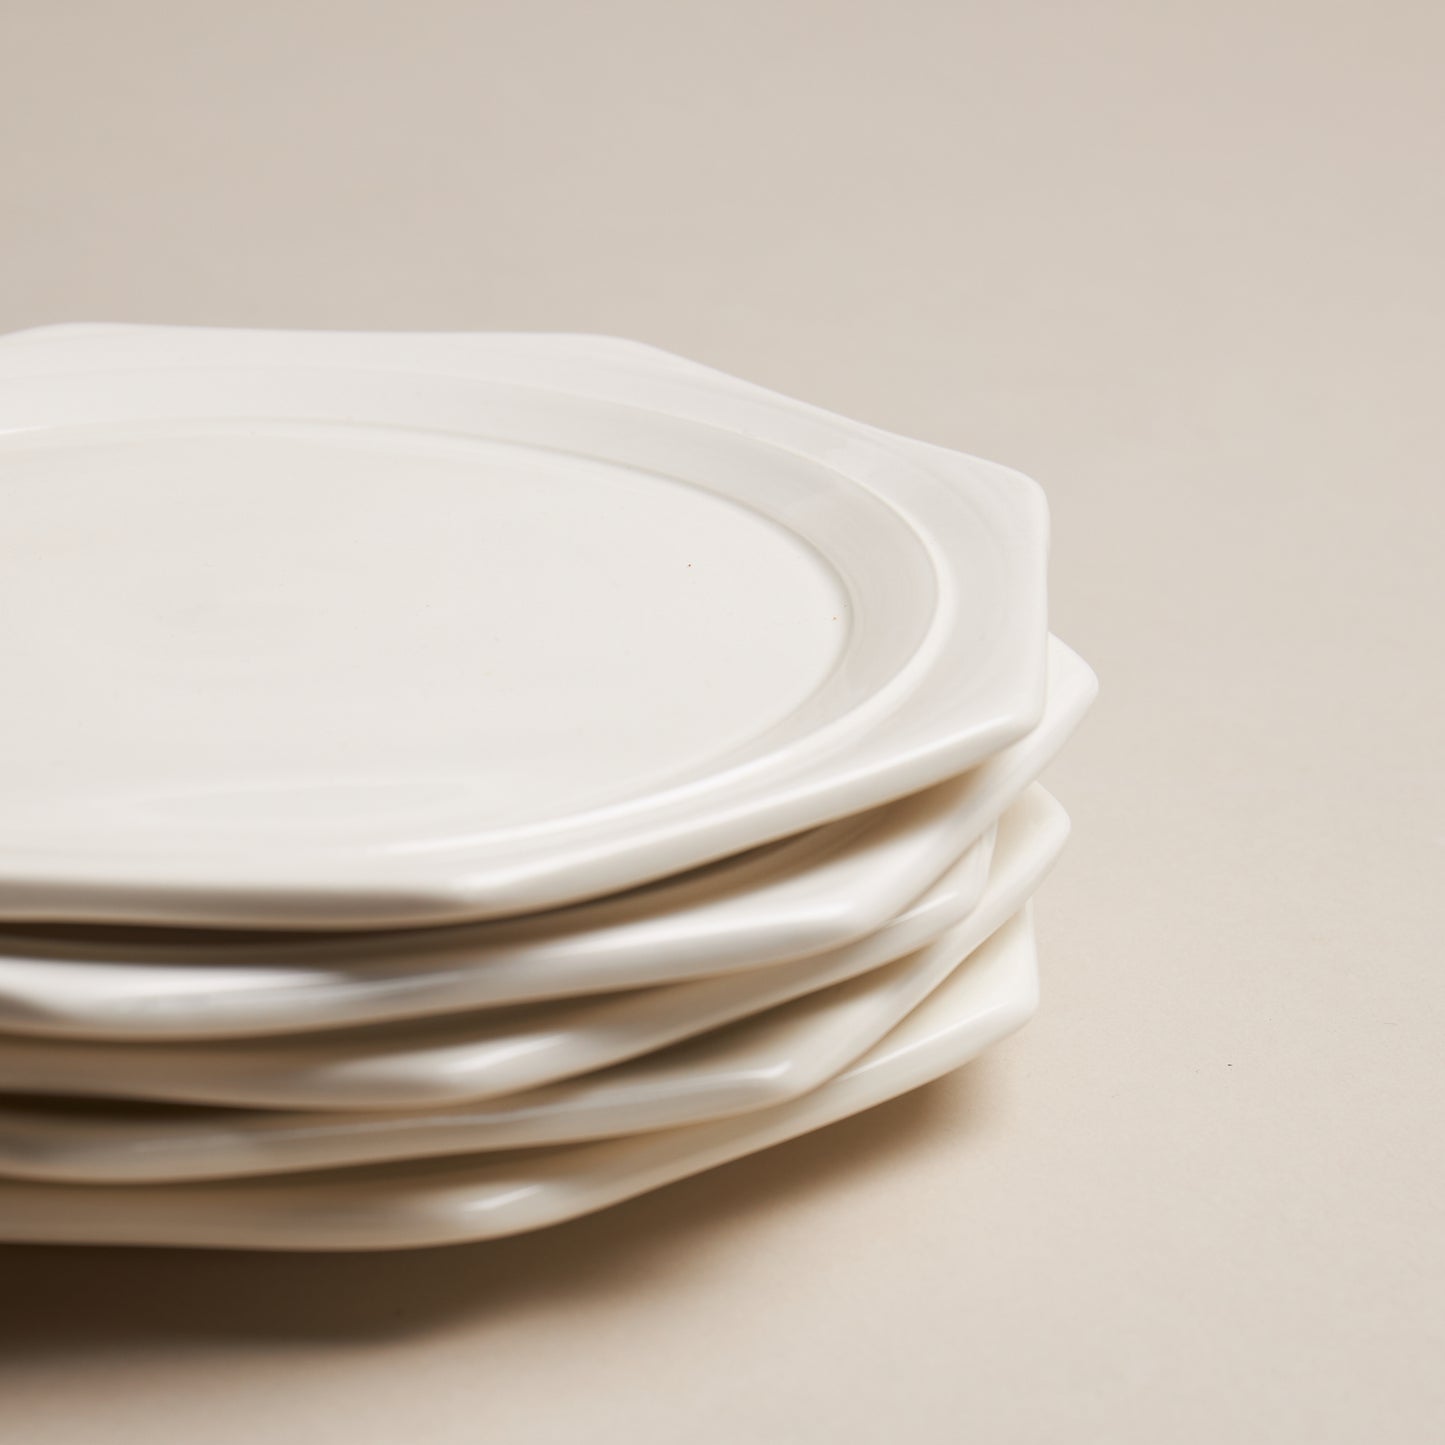 Creamware Hand Cast Octagonal Dessert Plate